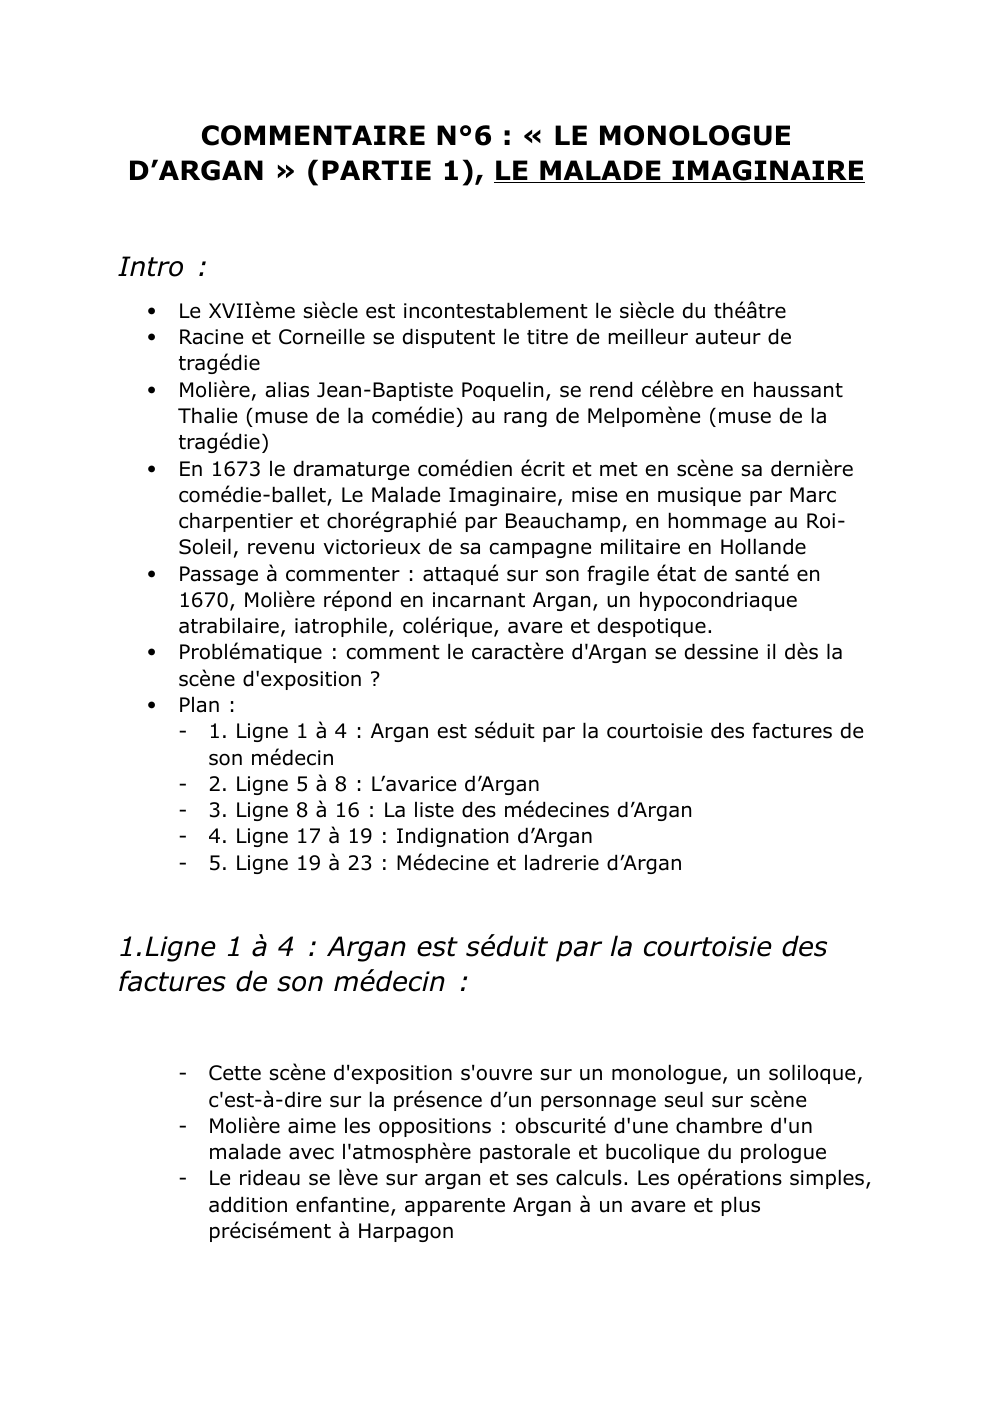 Prévisualisation du document Analyse linéaire Monologue d'Argan , Le Malade Imaginaire (partie 1)